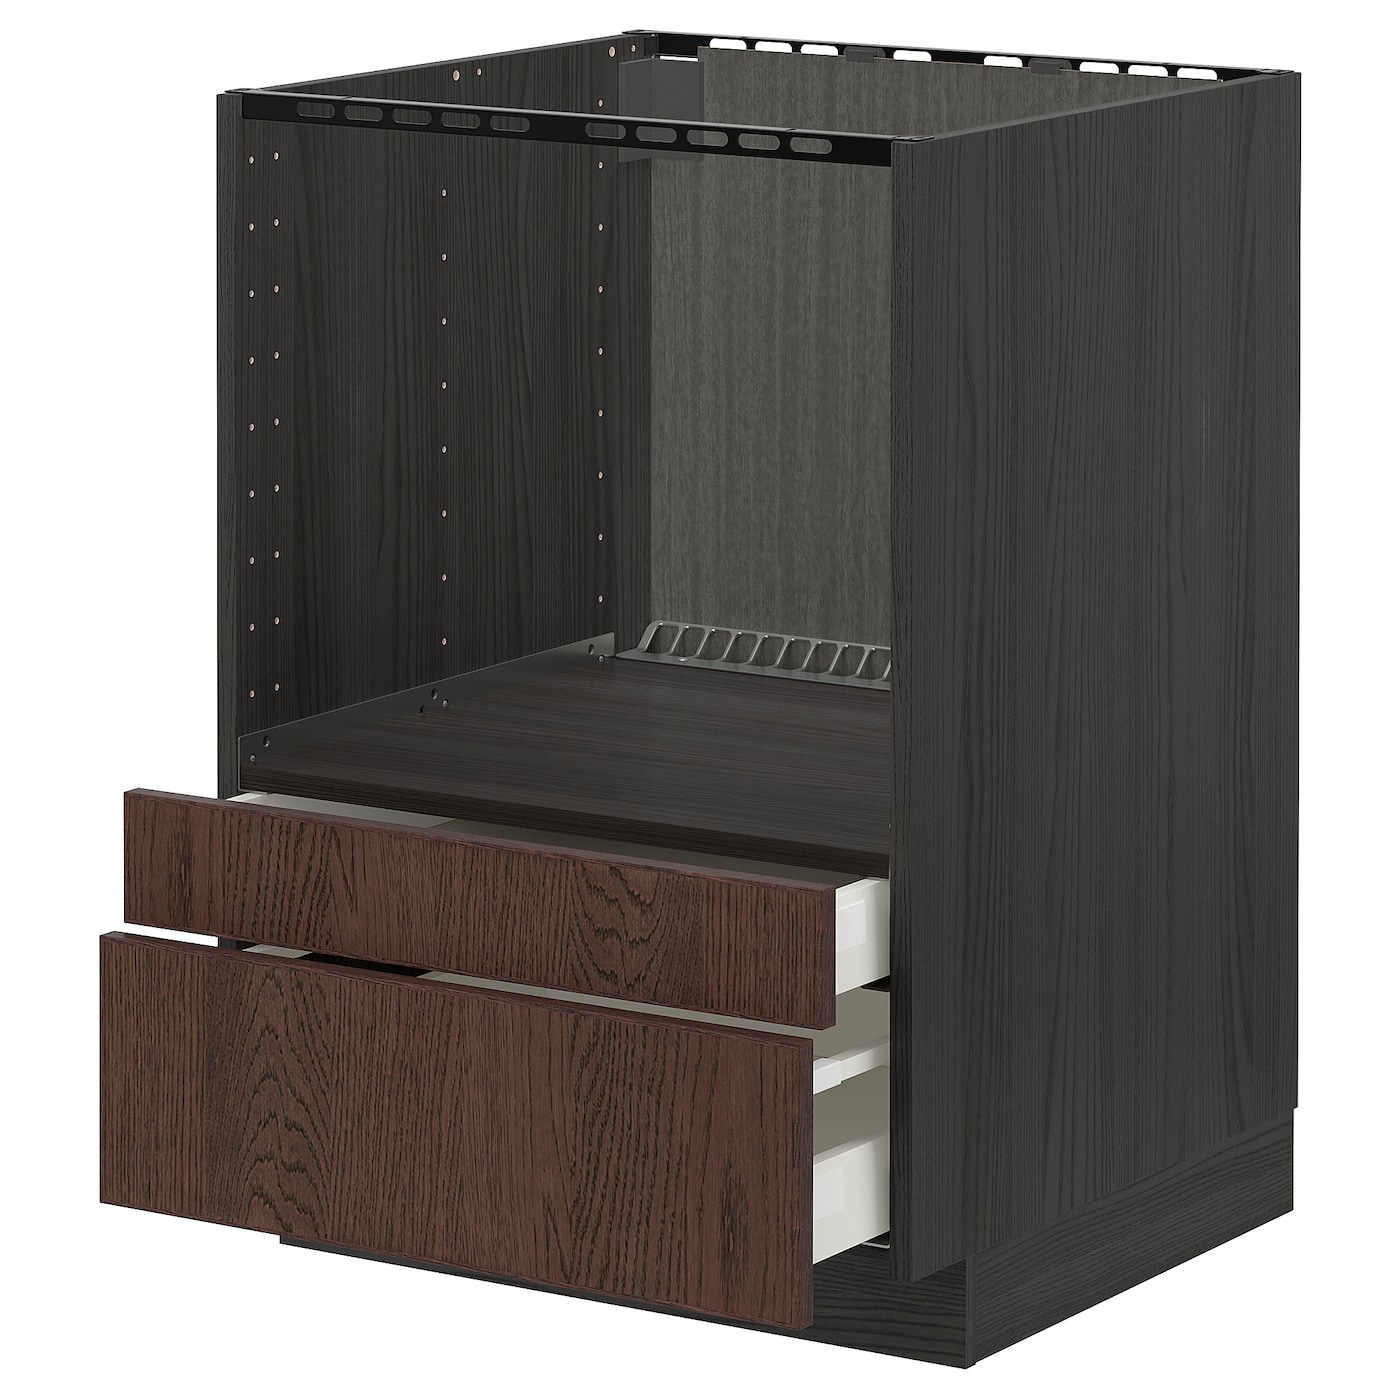 Напольный шкаф - IKEA METOD MAXIMERA, 88x62x60см, черный/коричневый, МЕТОД МАКСИМЕРА ИКЕА